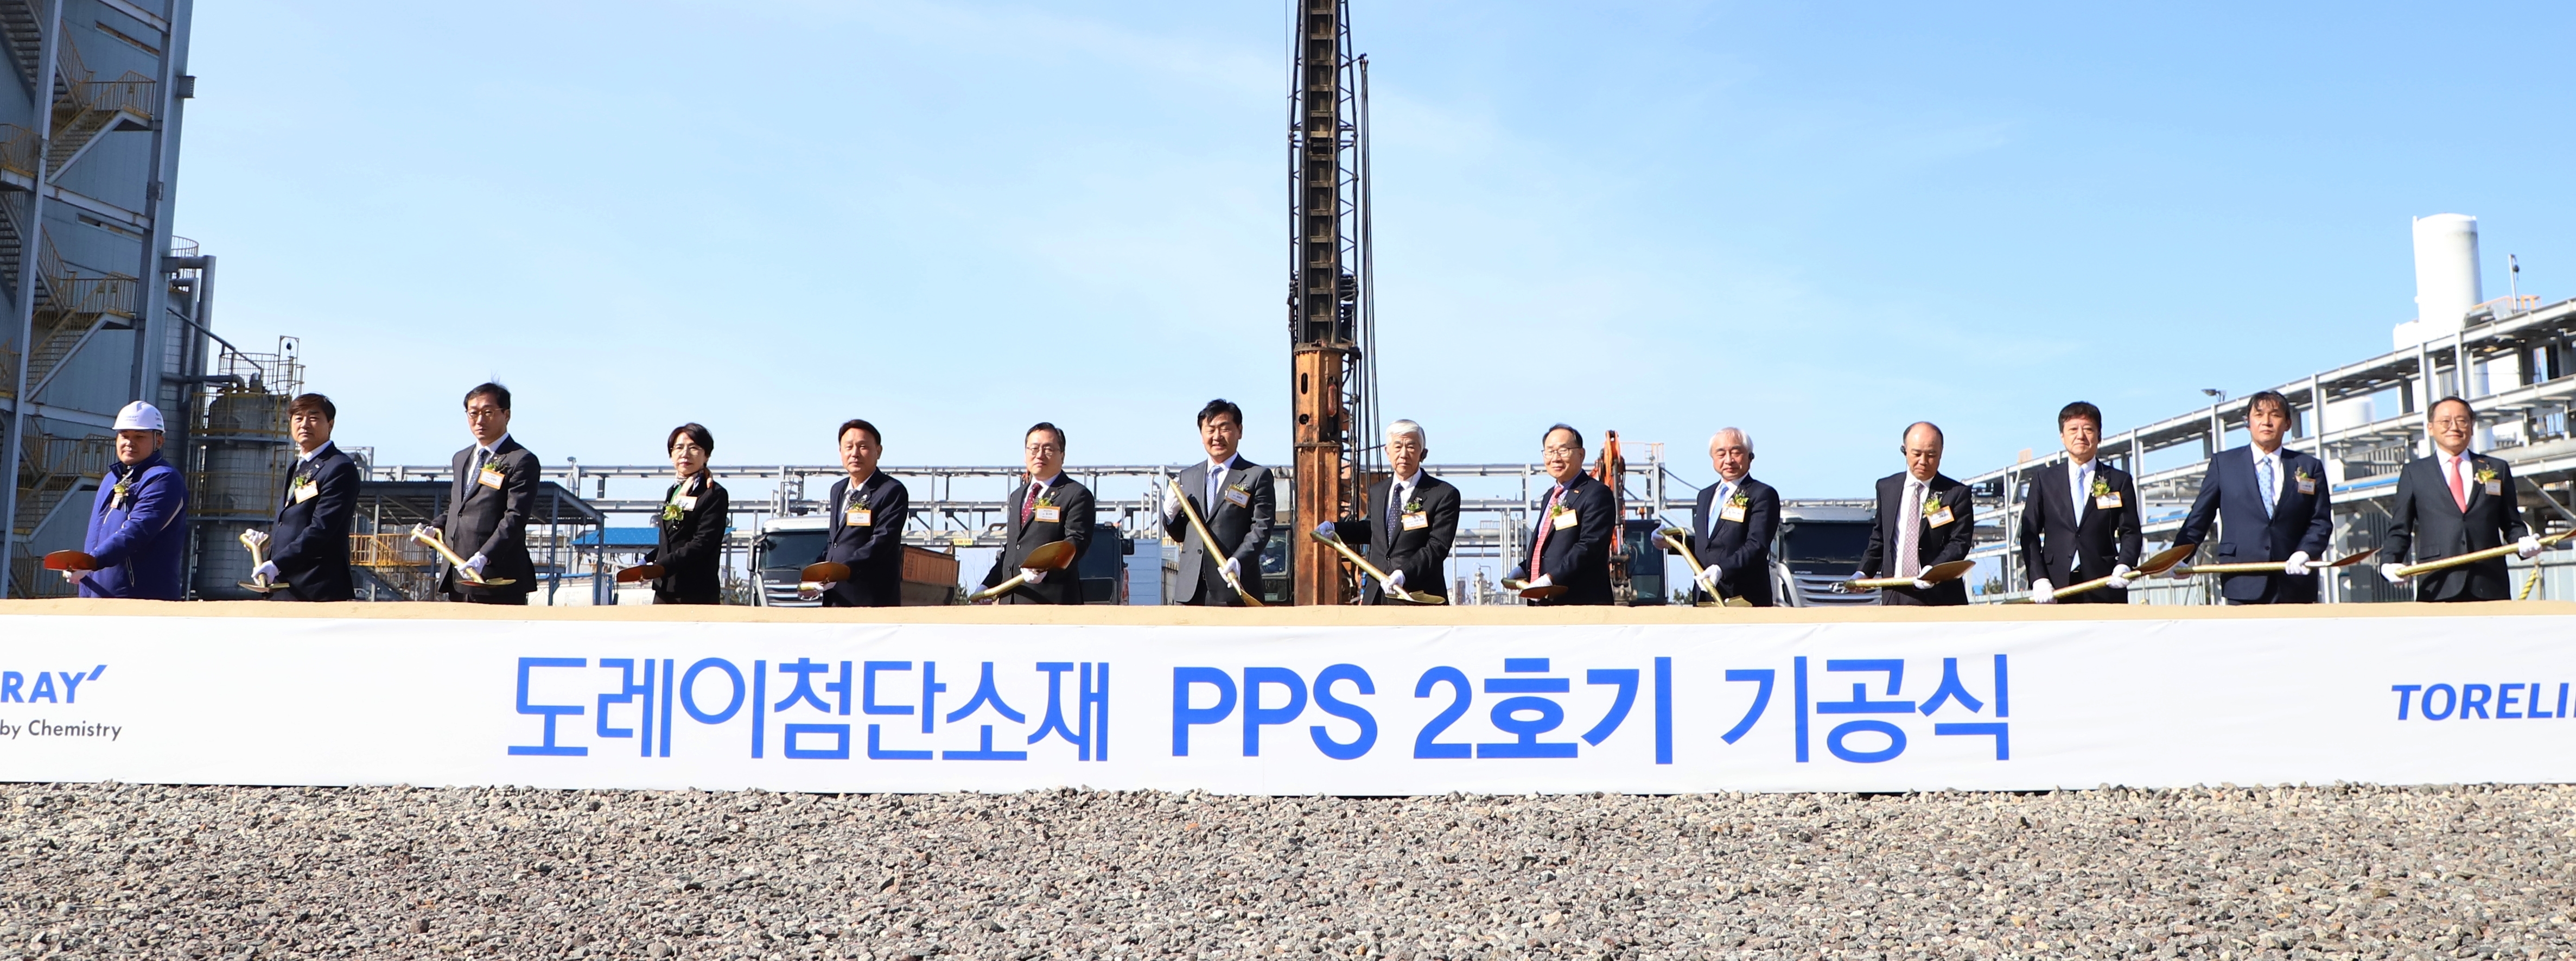 PPS樹脂2号機増設の起工式開催